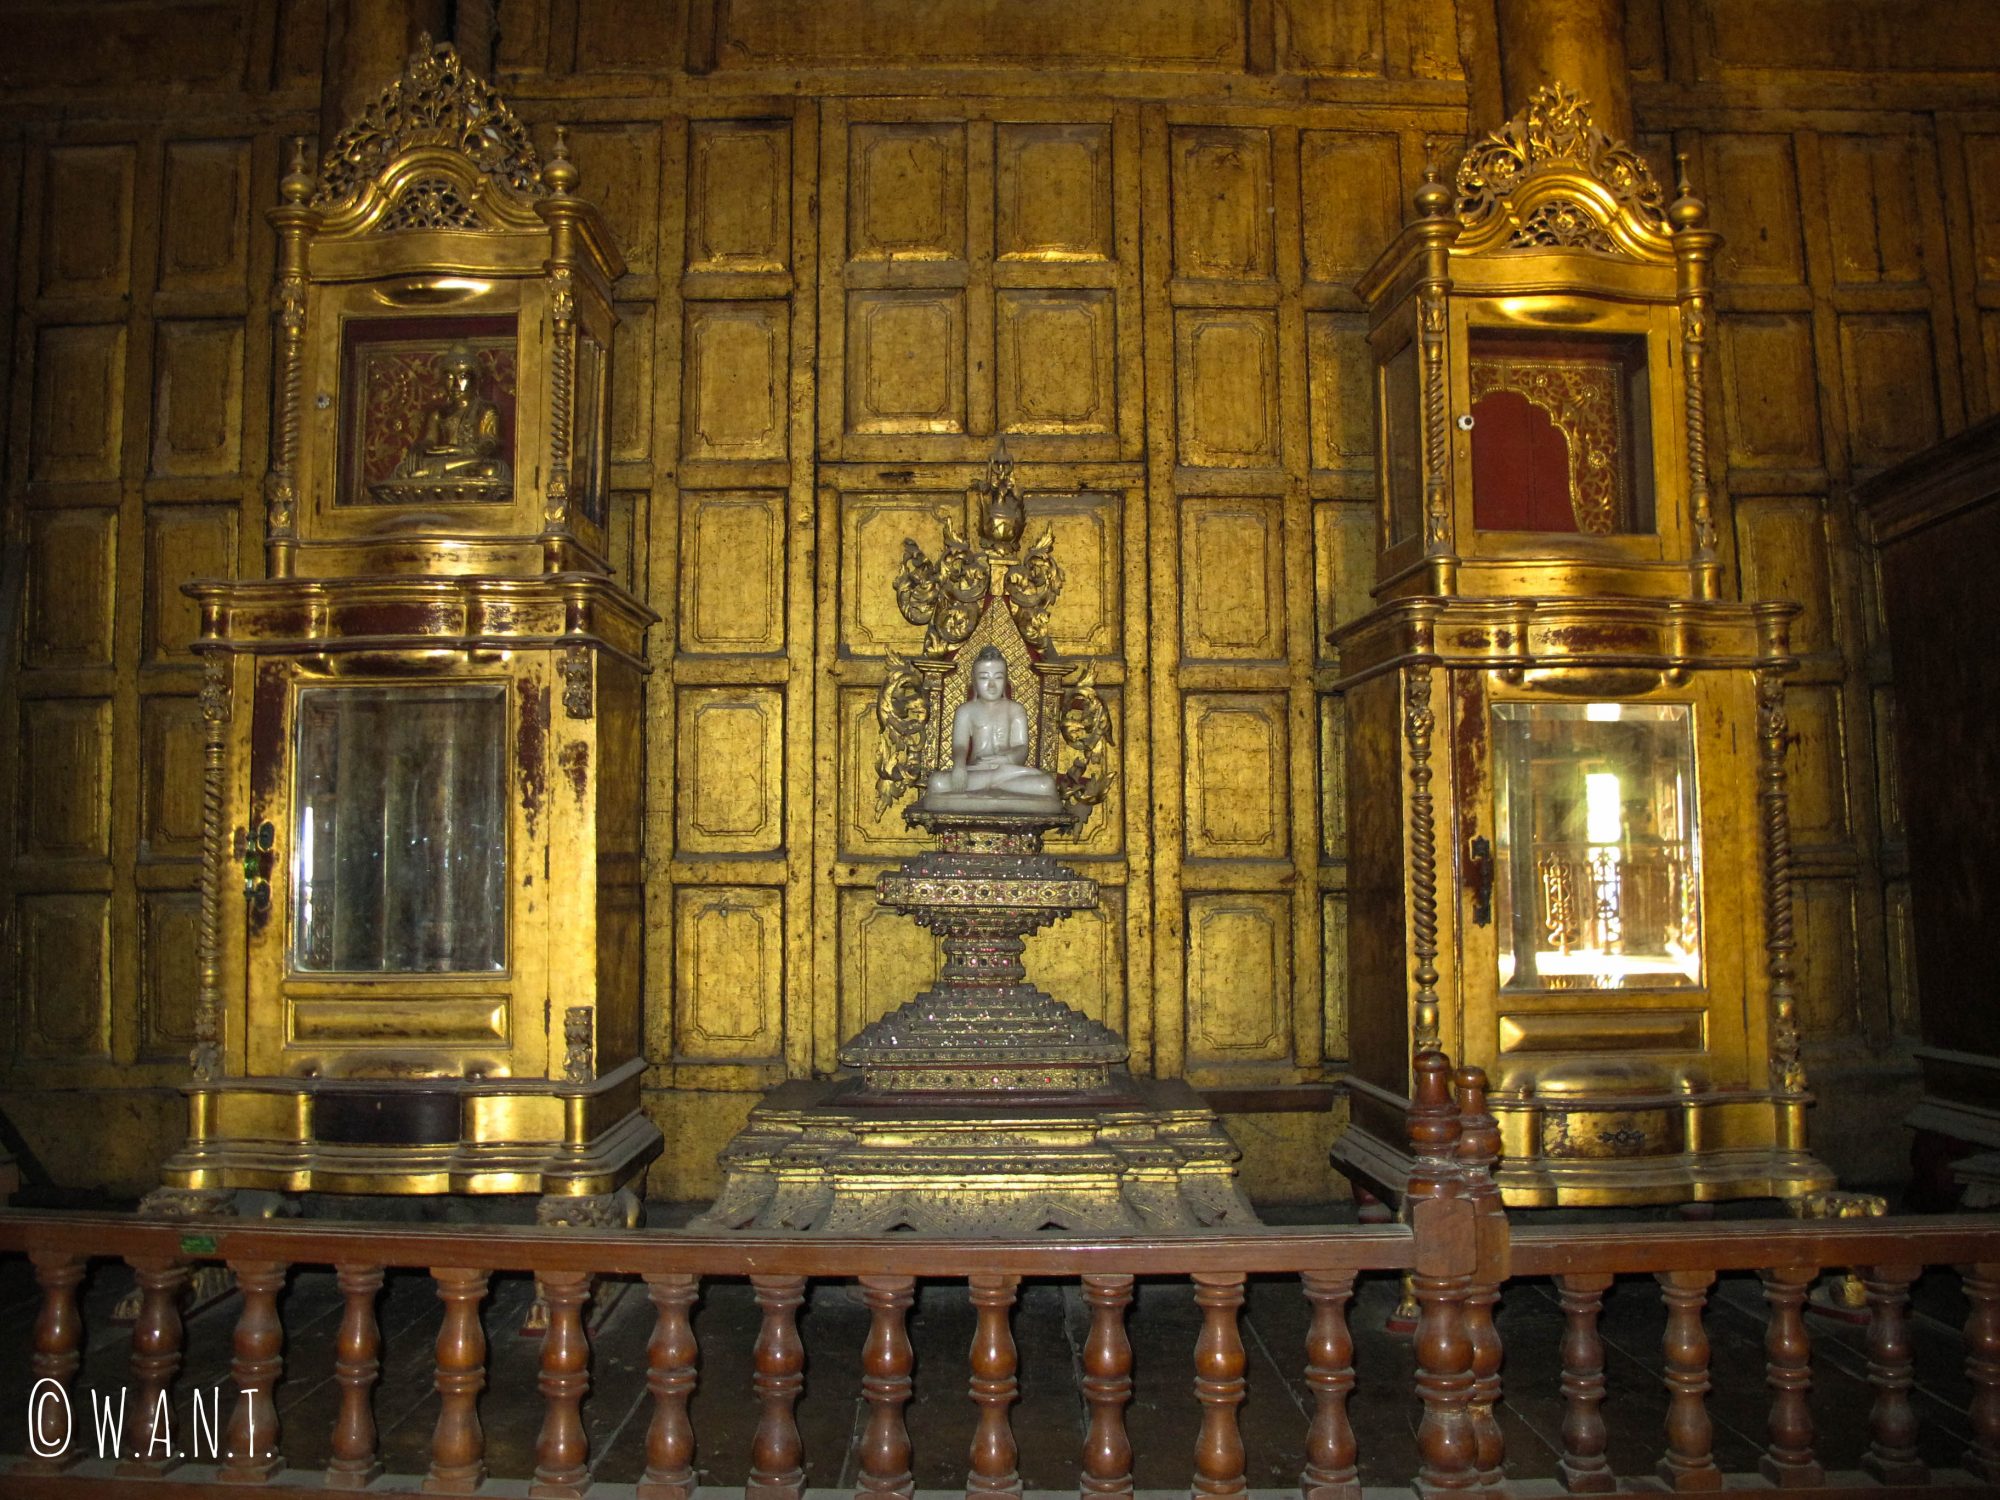 Décorations à l'intérieur du monastère Shwenandaw